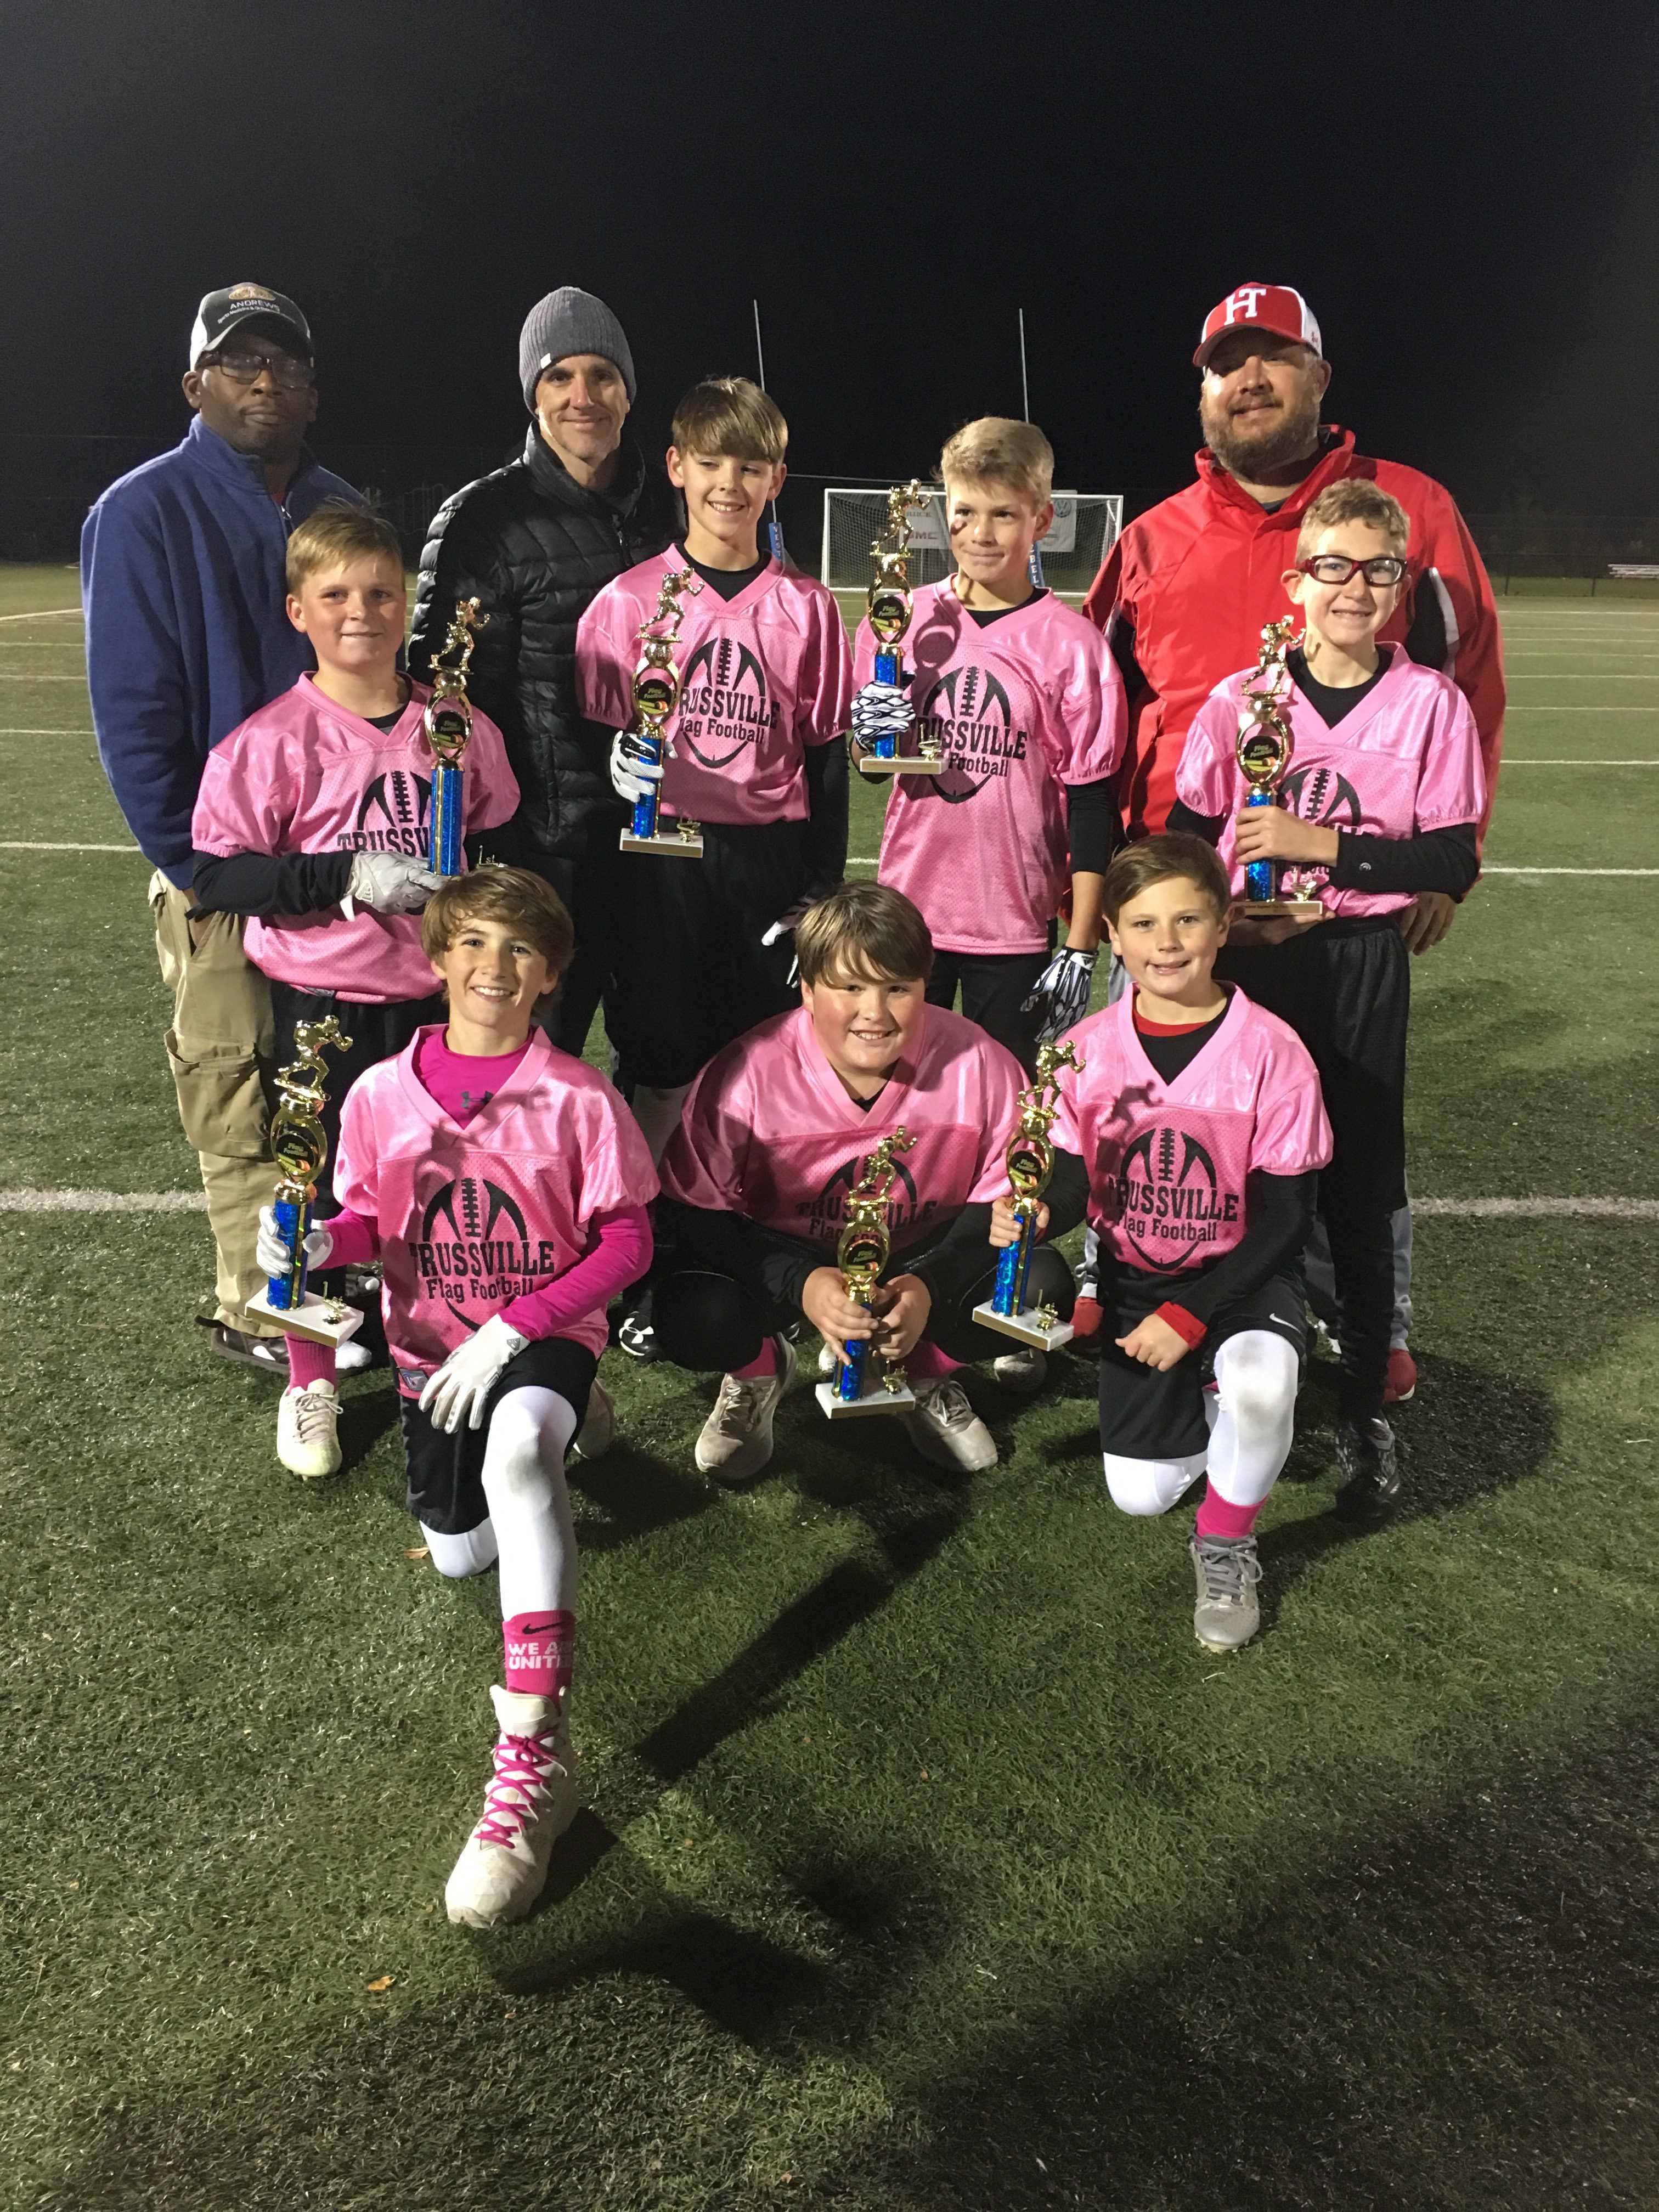 Trussville flag football team wins regional championship